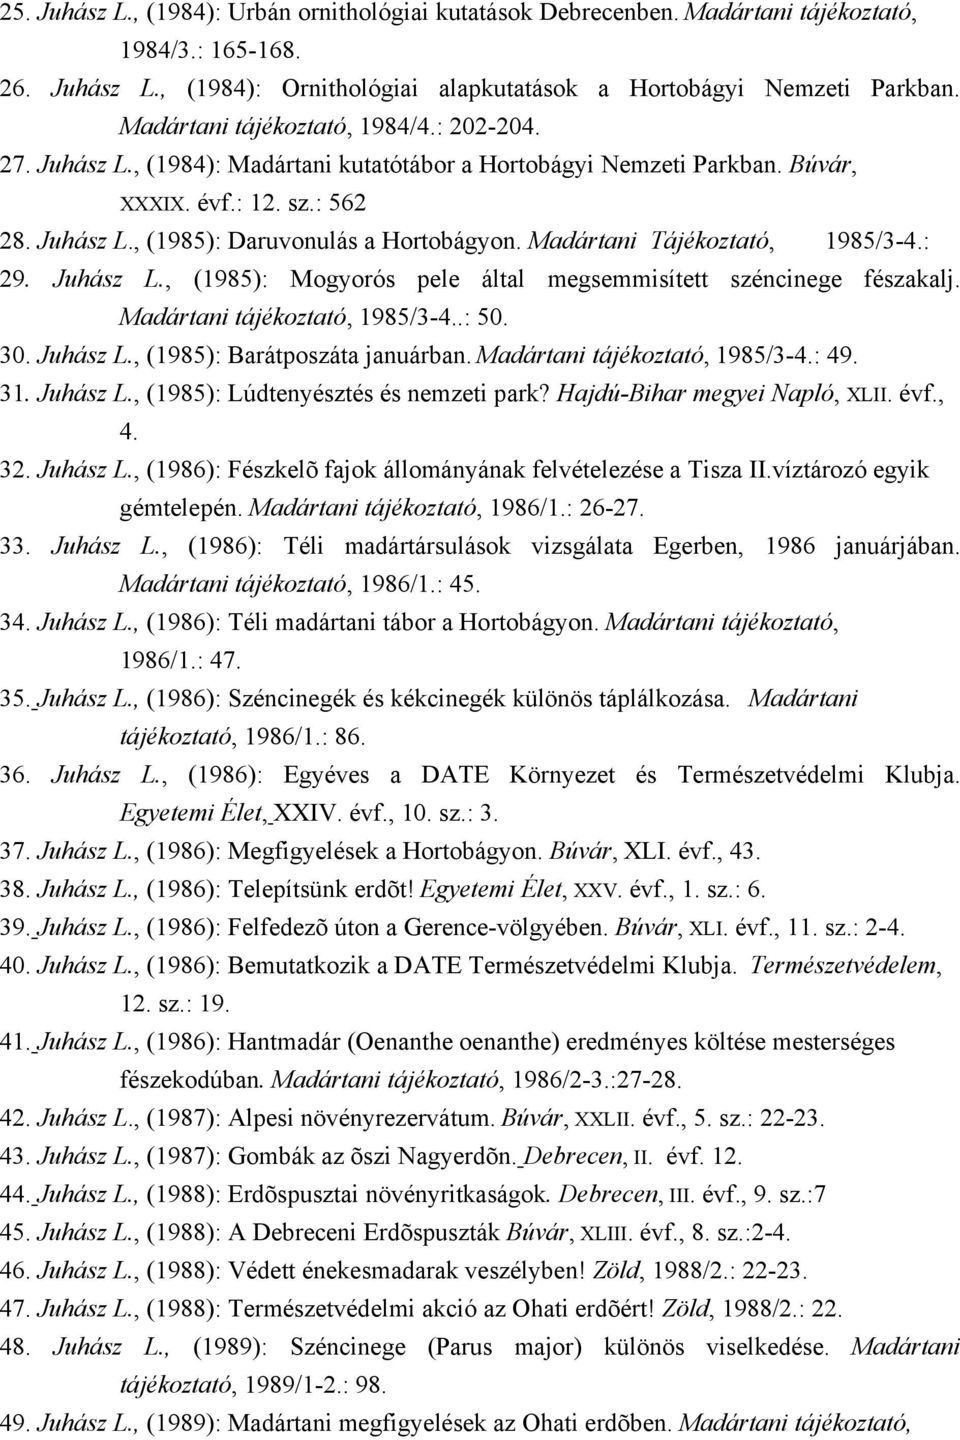 Madártani Tájékoztató, 1985/3-4.: 29. Juhász L., (1985): Mogyorós pele által megsemmisített széncinege fészakalj. Madártani tájékoztató, 1985/3-4..: 50. 30. Juhász L., (1985): Barátposzáta januárban.